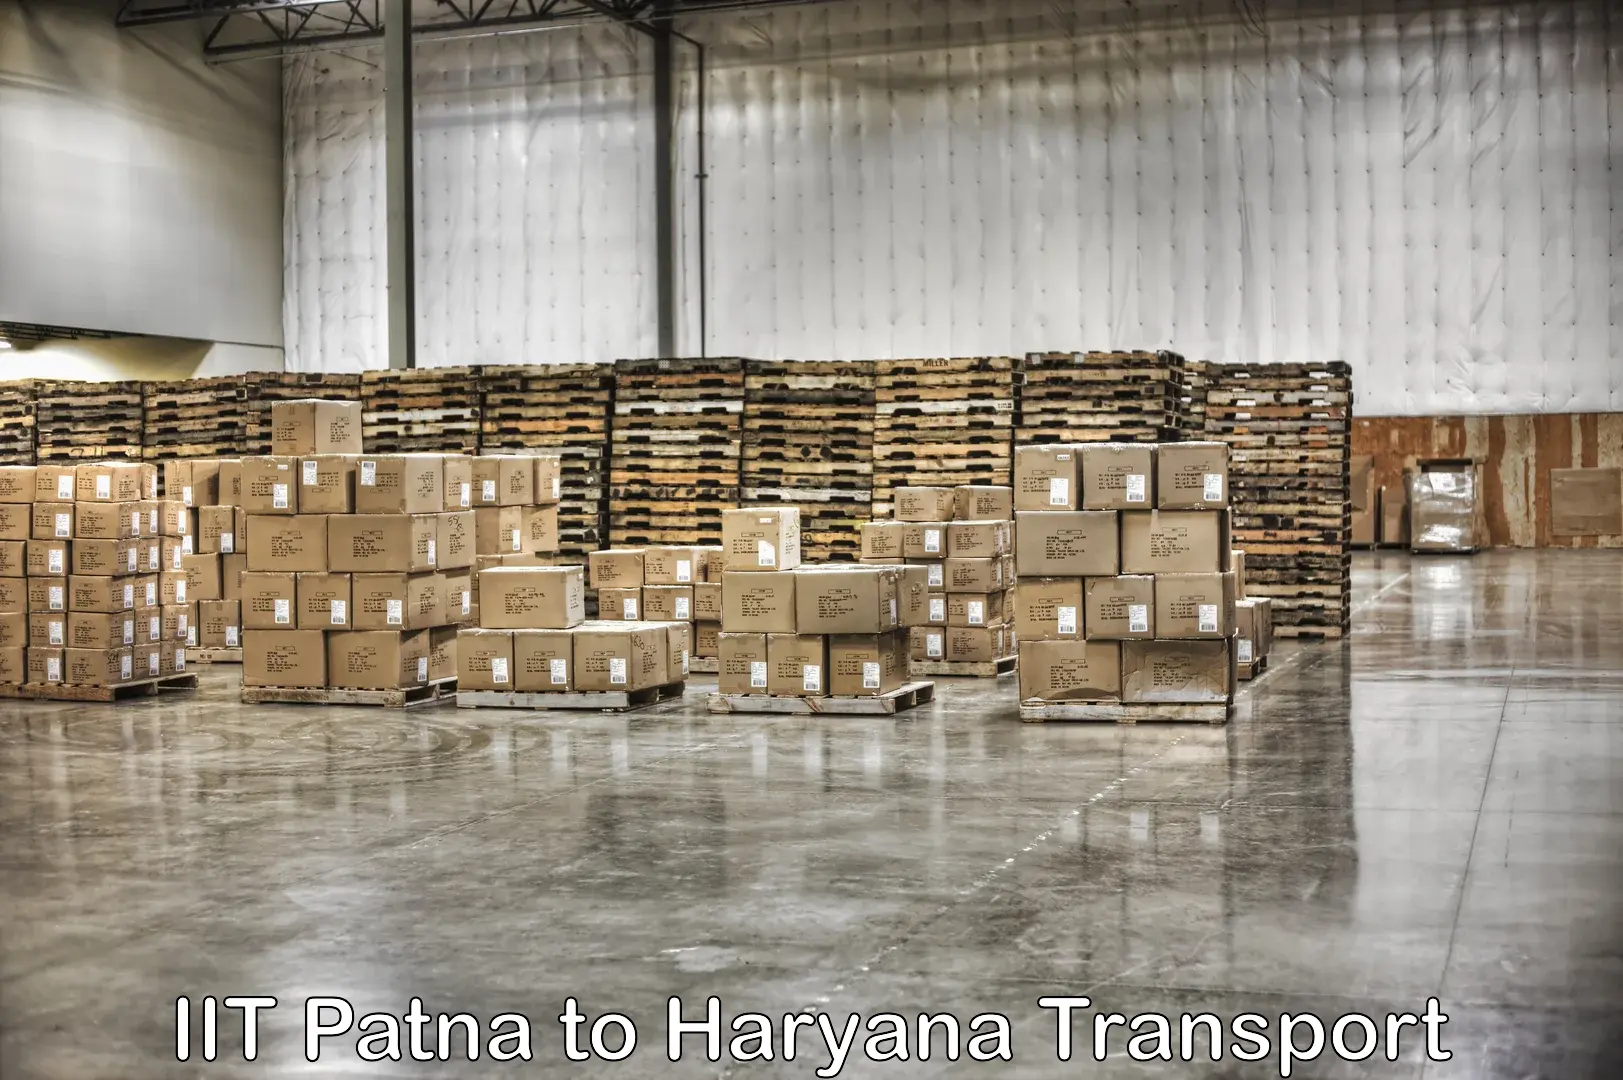 Shipping partner IIT Patna to Gurgaon